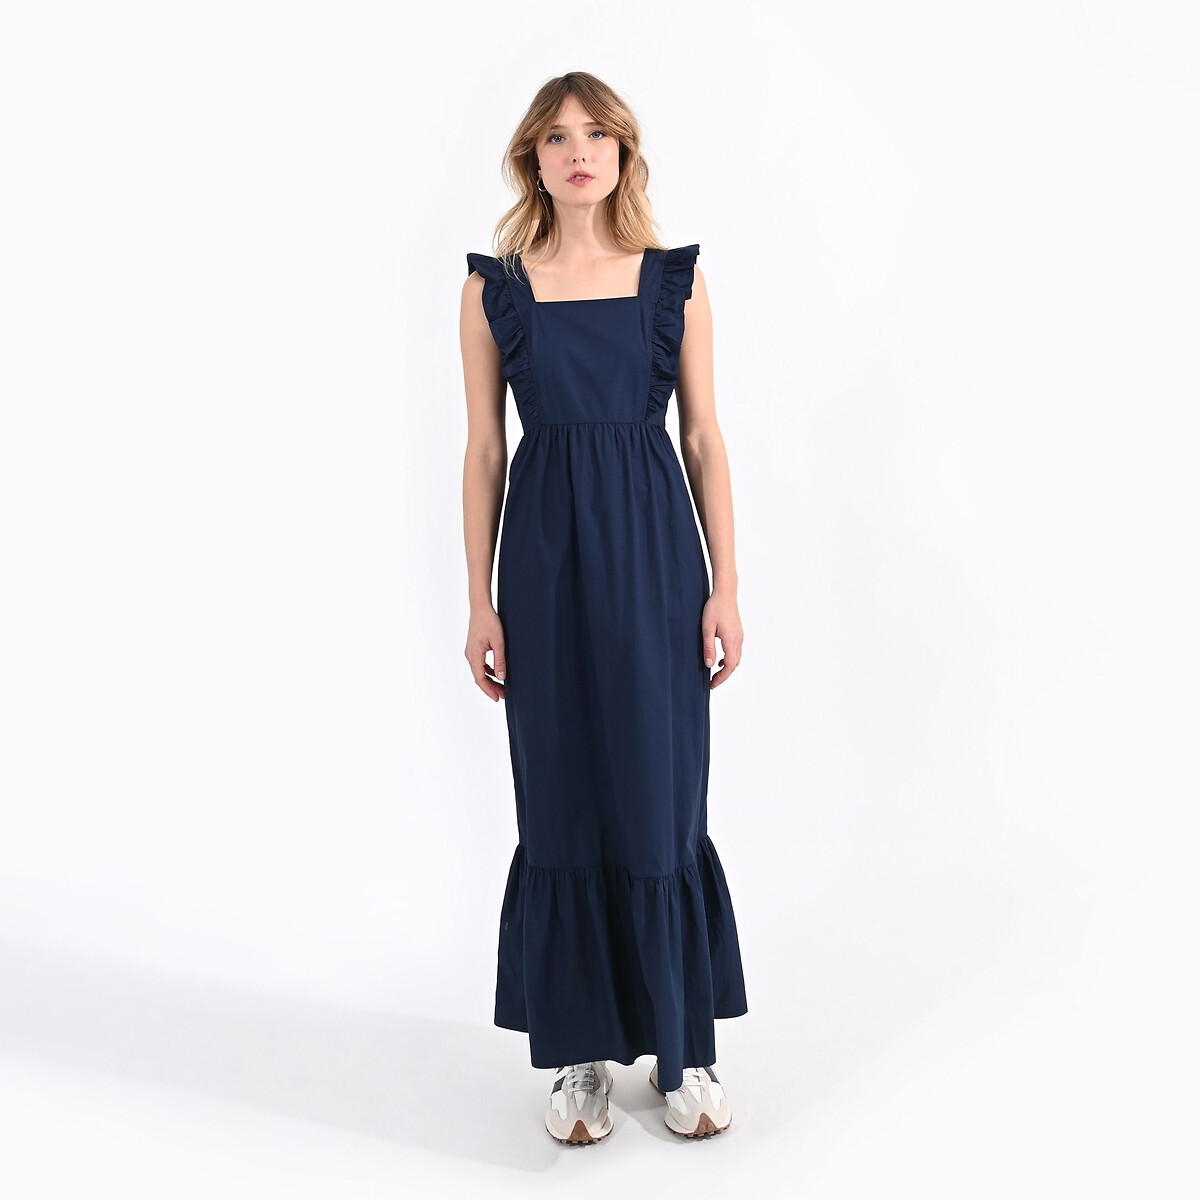 Платье длинное с воланами XL синий платье длинное на пуговицах с воланами с поясом 48 синий